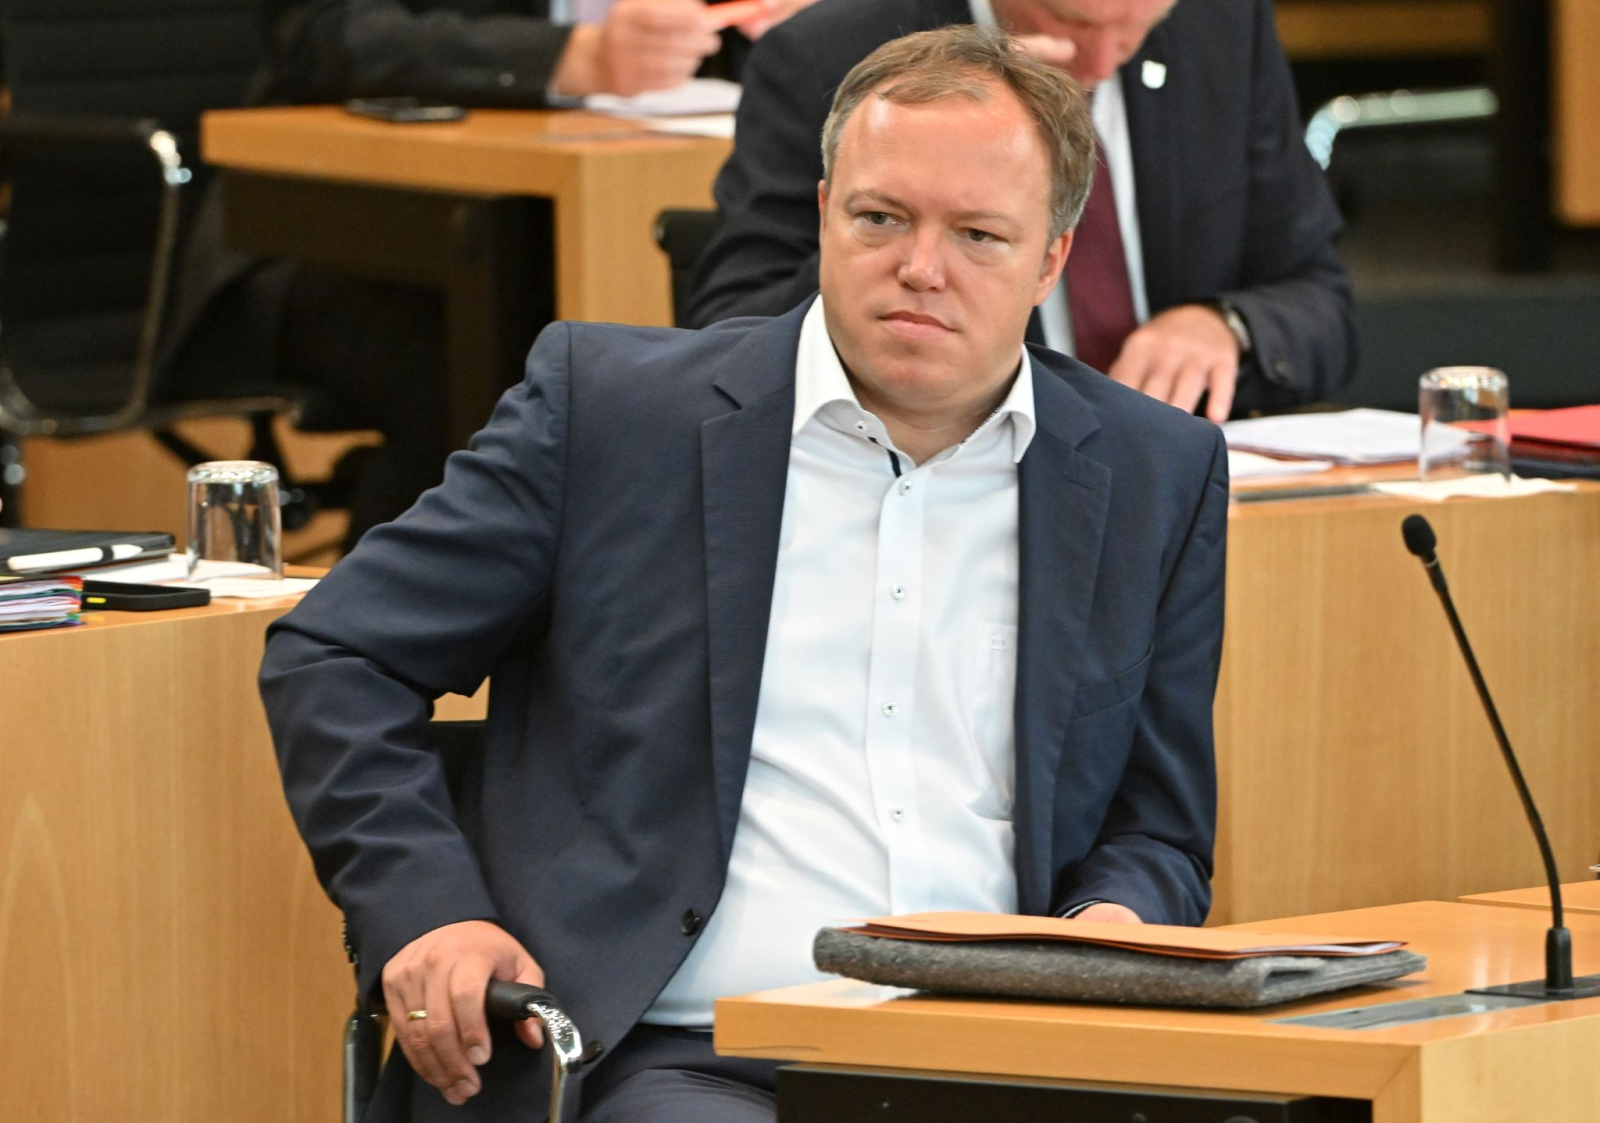 Mario Voigt, Thüringer CDU-Fraktionschef, verfolgt im Plenarsaal eine Landtagssitzung.